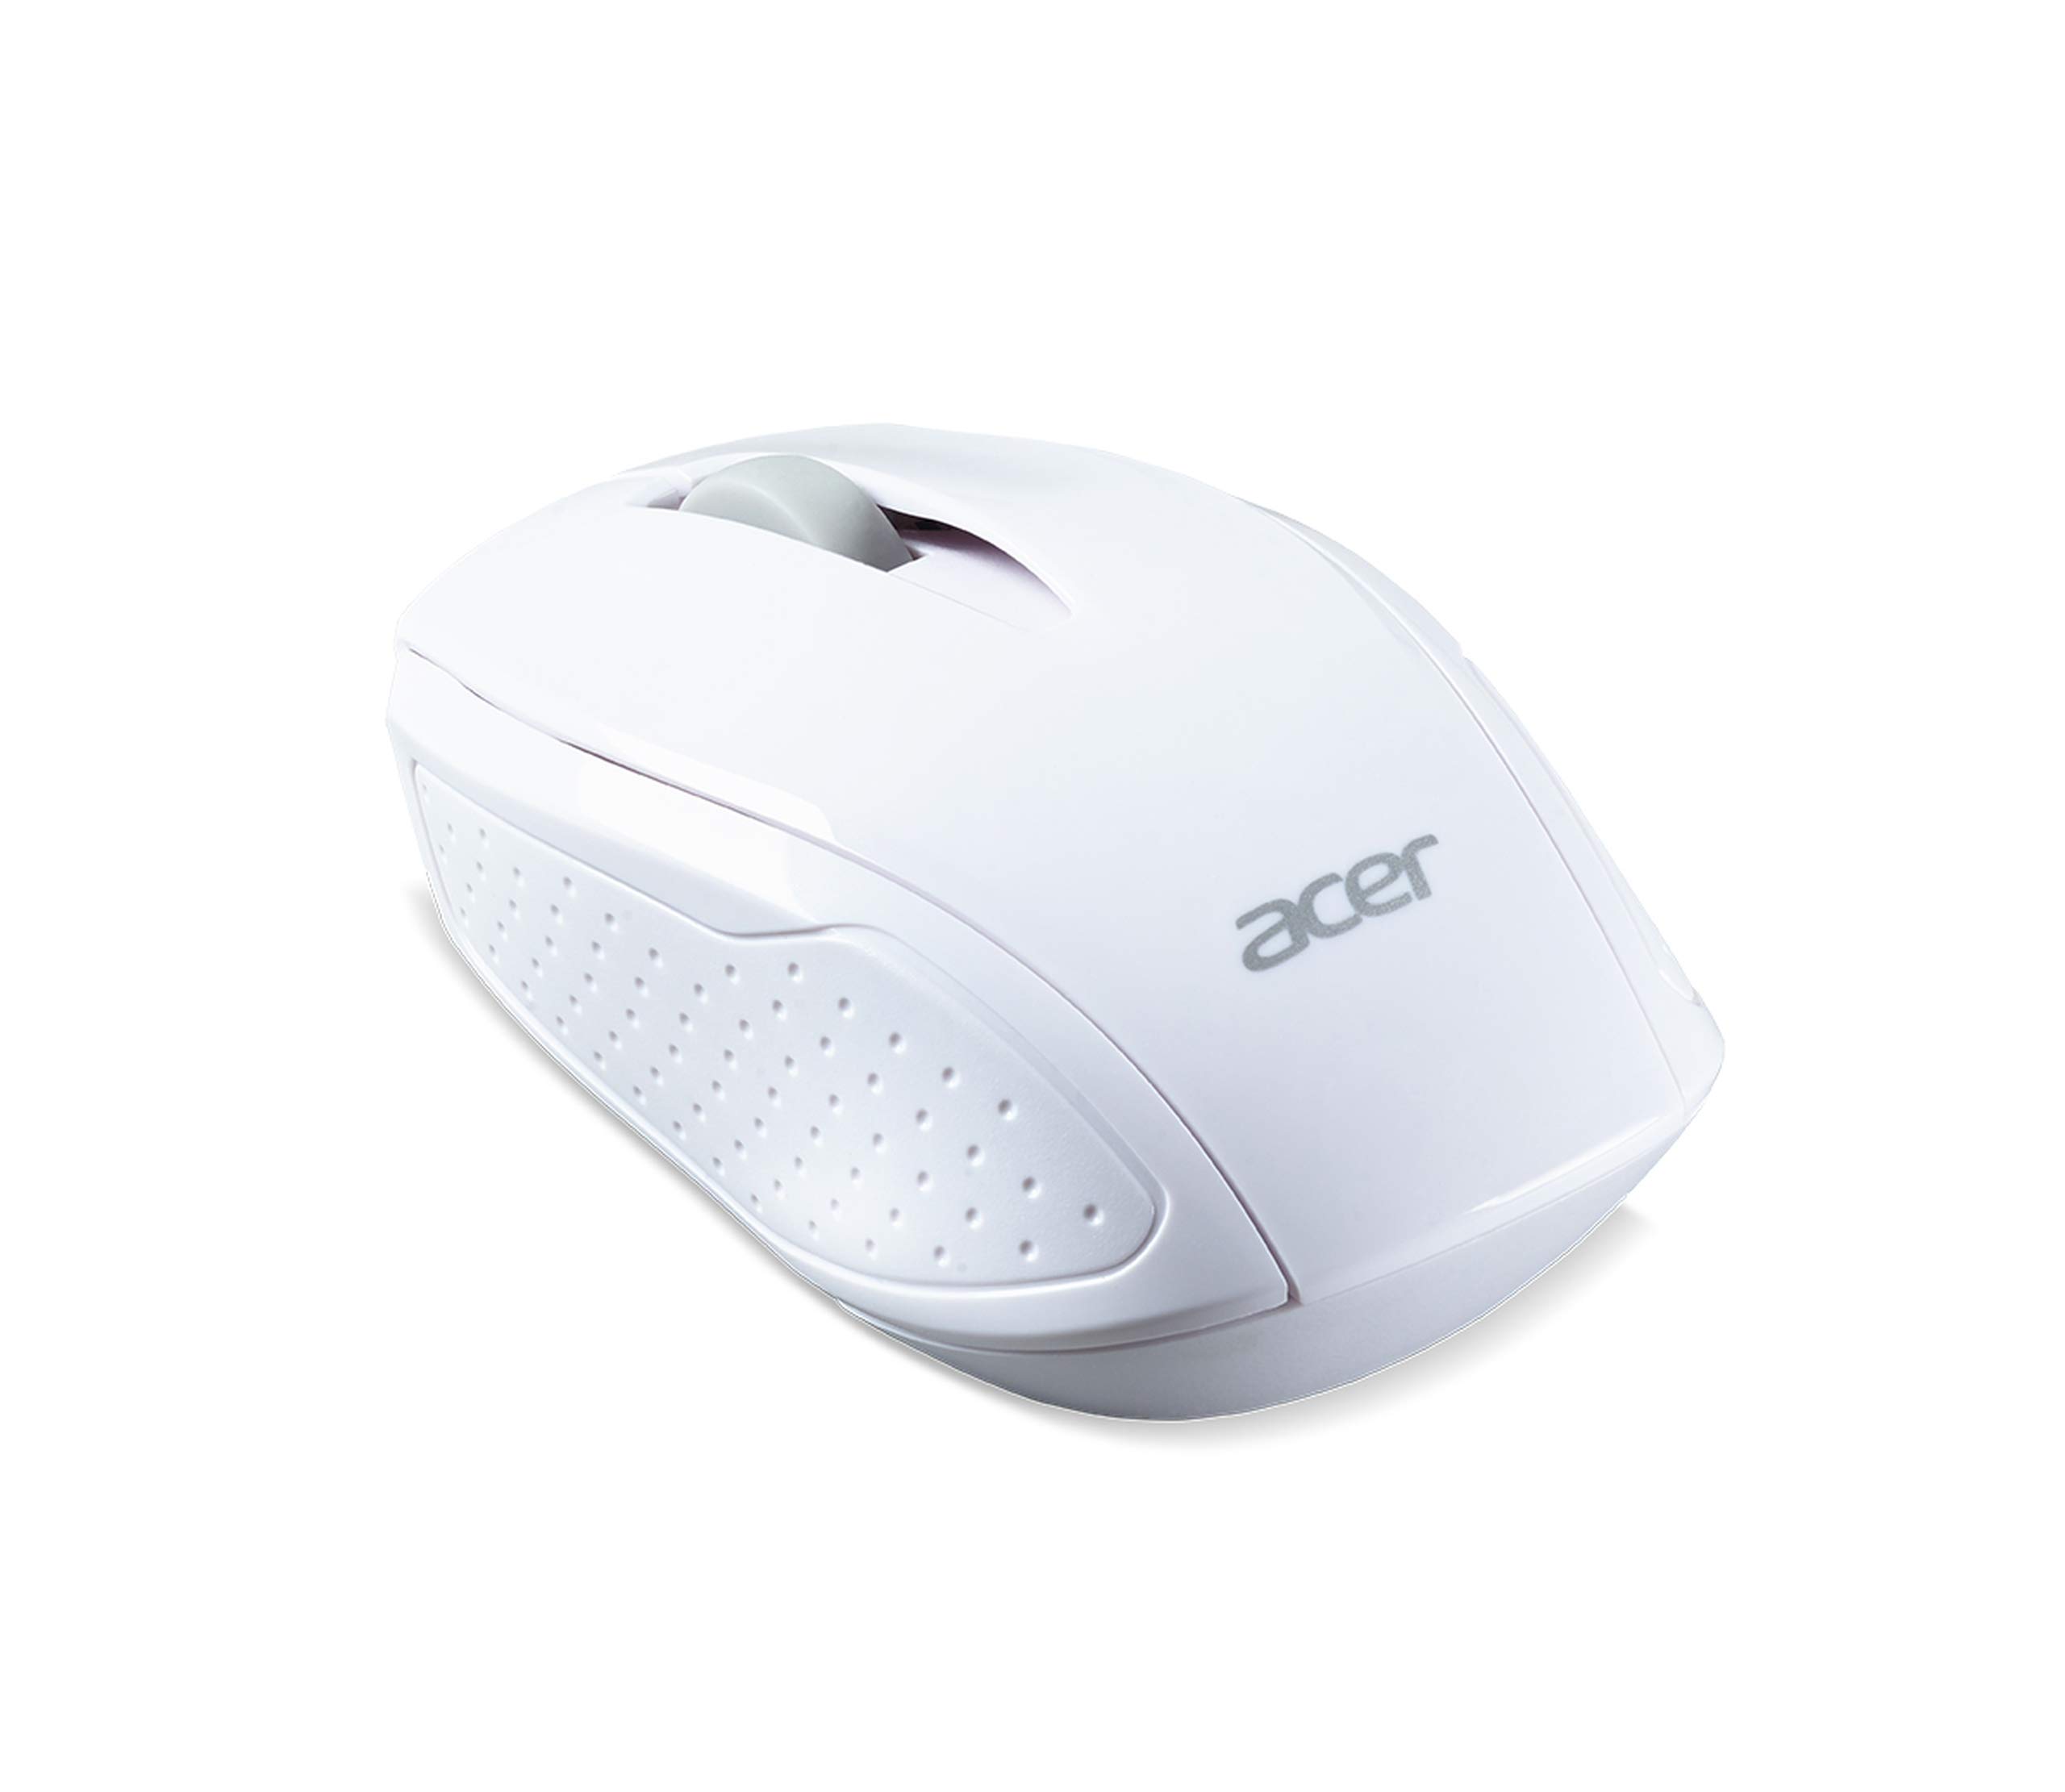 Acer Wireless Chrome Maus G69 RF2.4G (1600 DPI, WWCB-zertifiziert, Smart-Power-Management, schlankes Design, feines Scrollrad) weiß